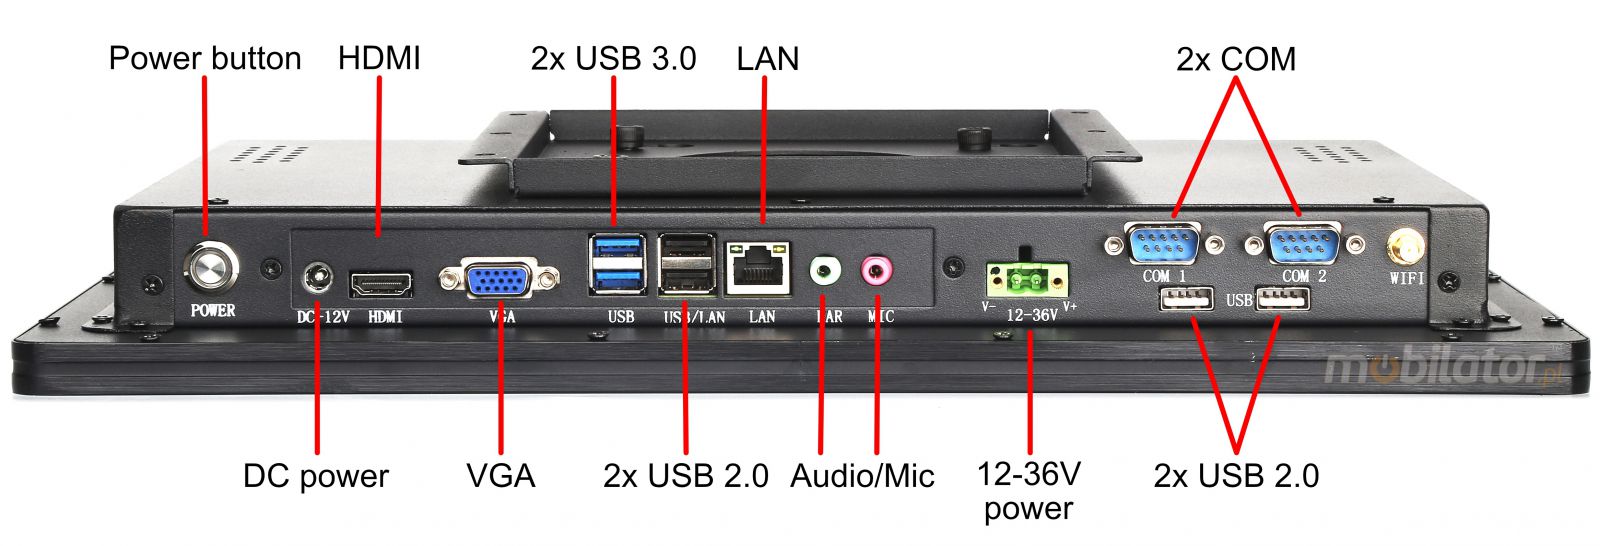 BiBOX-215PC1 (J1900) v.5 - Mocny panelowy komputer z dotykowym ekranem, odpornoci IP65, WiFi i rozszerzonym dyskiem SSD (512 GB)